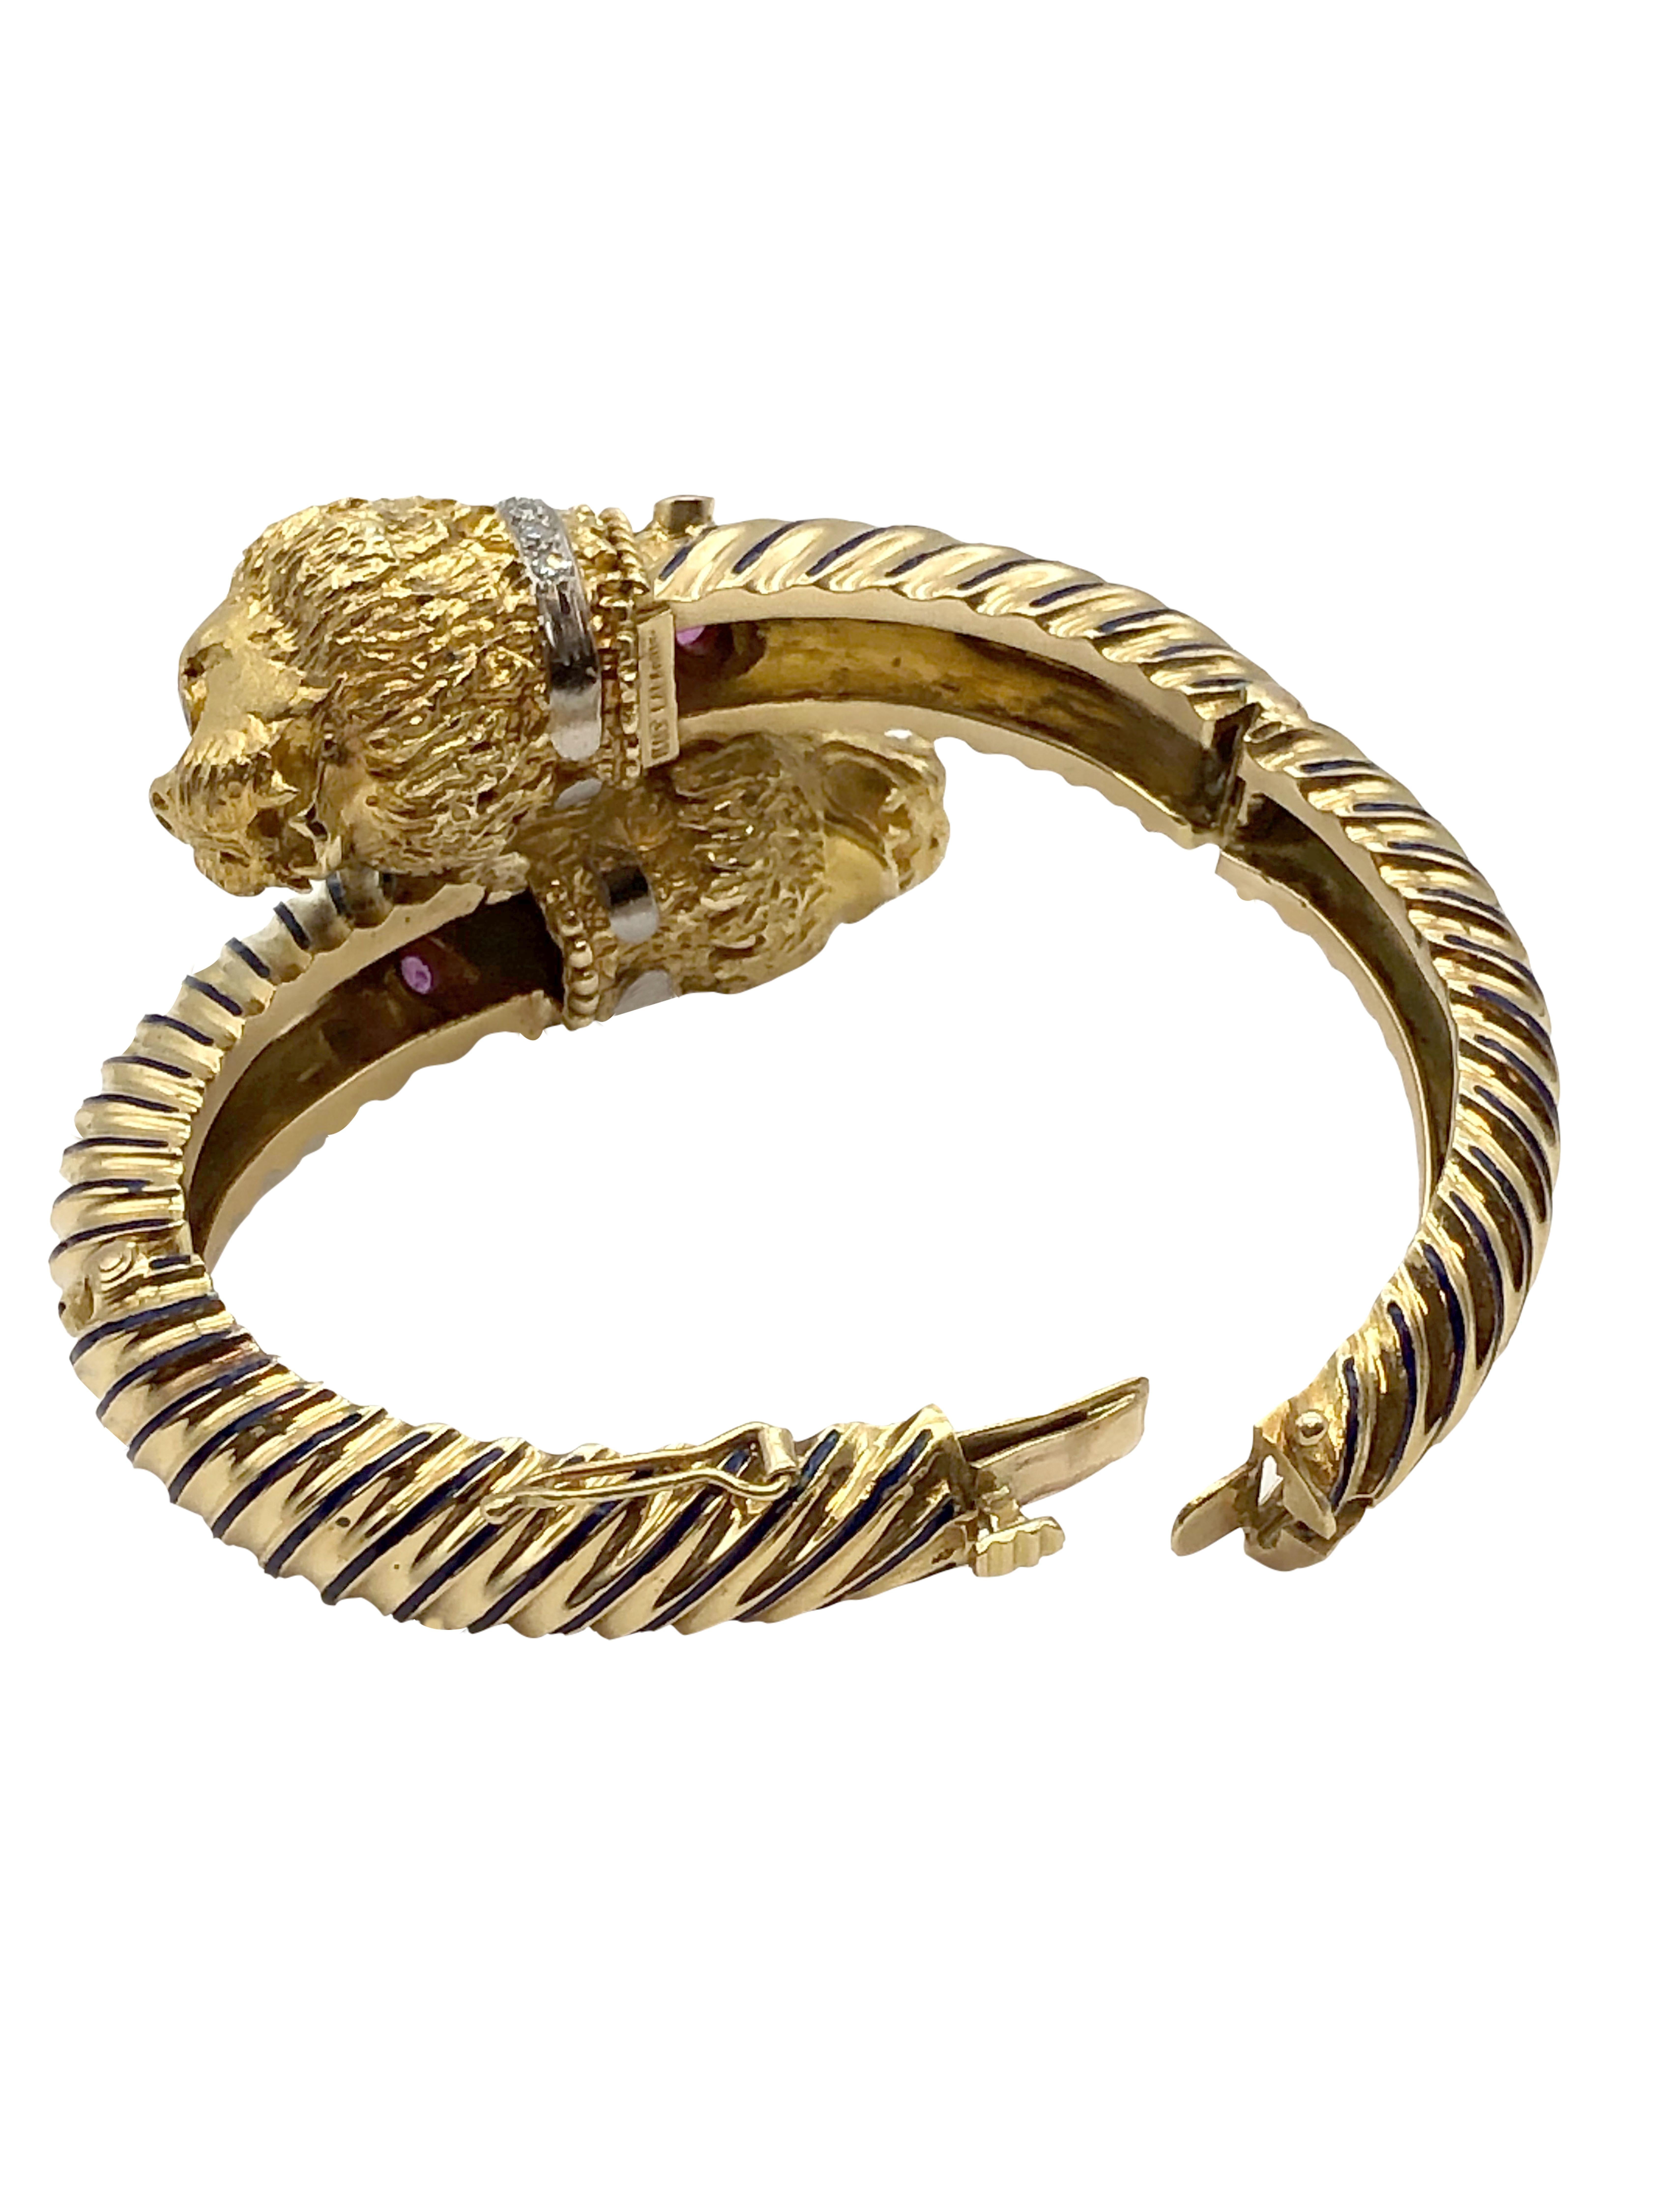 Ilias LaLaounis Large Gold and Gem Set Chimera Bangle Bracelet 1